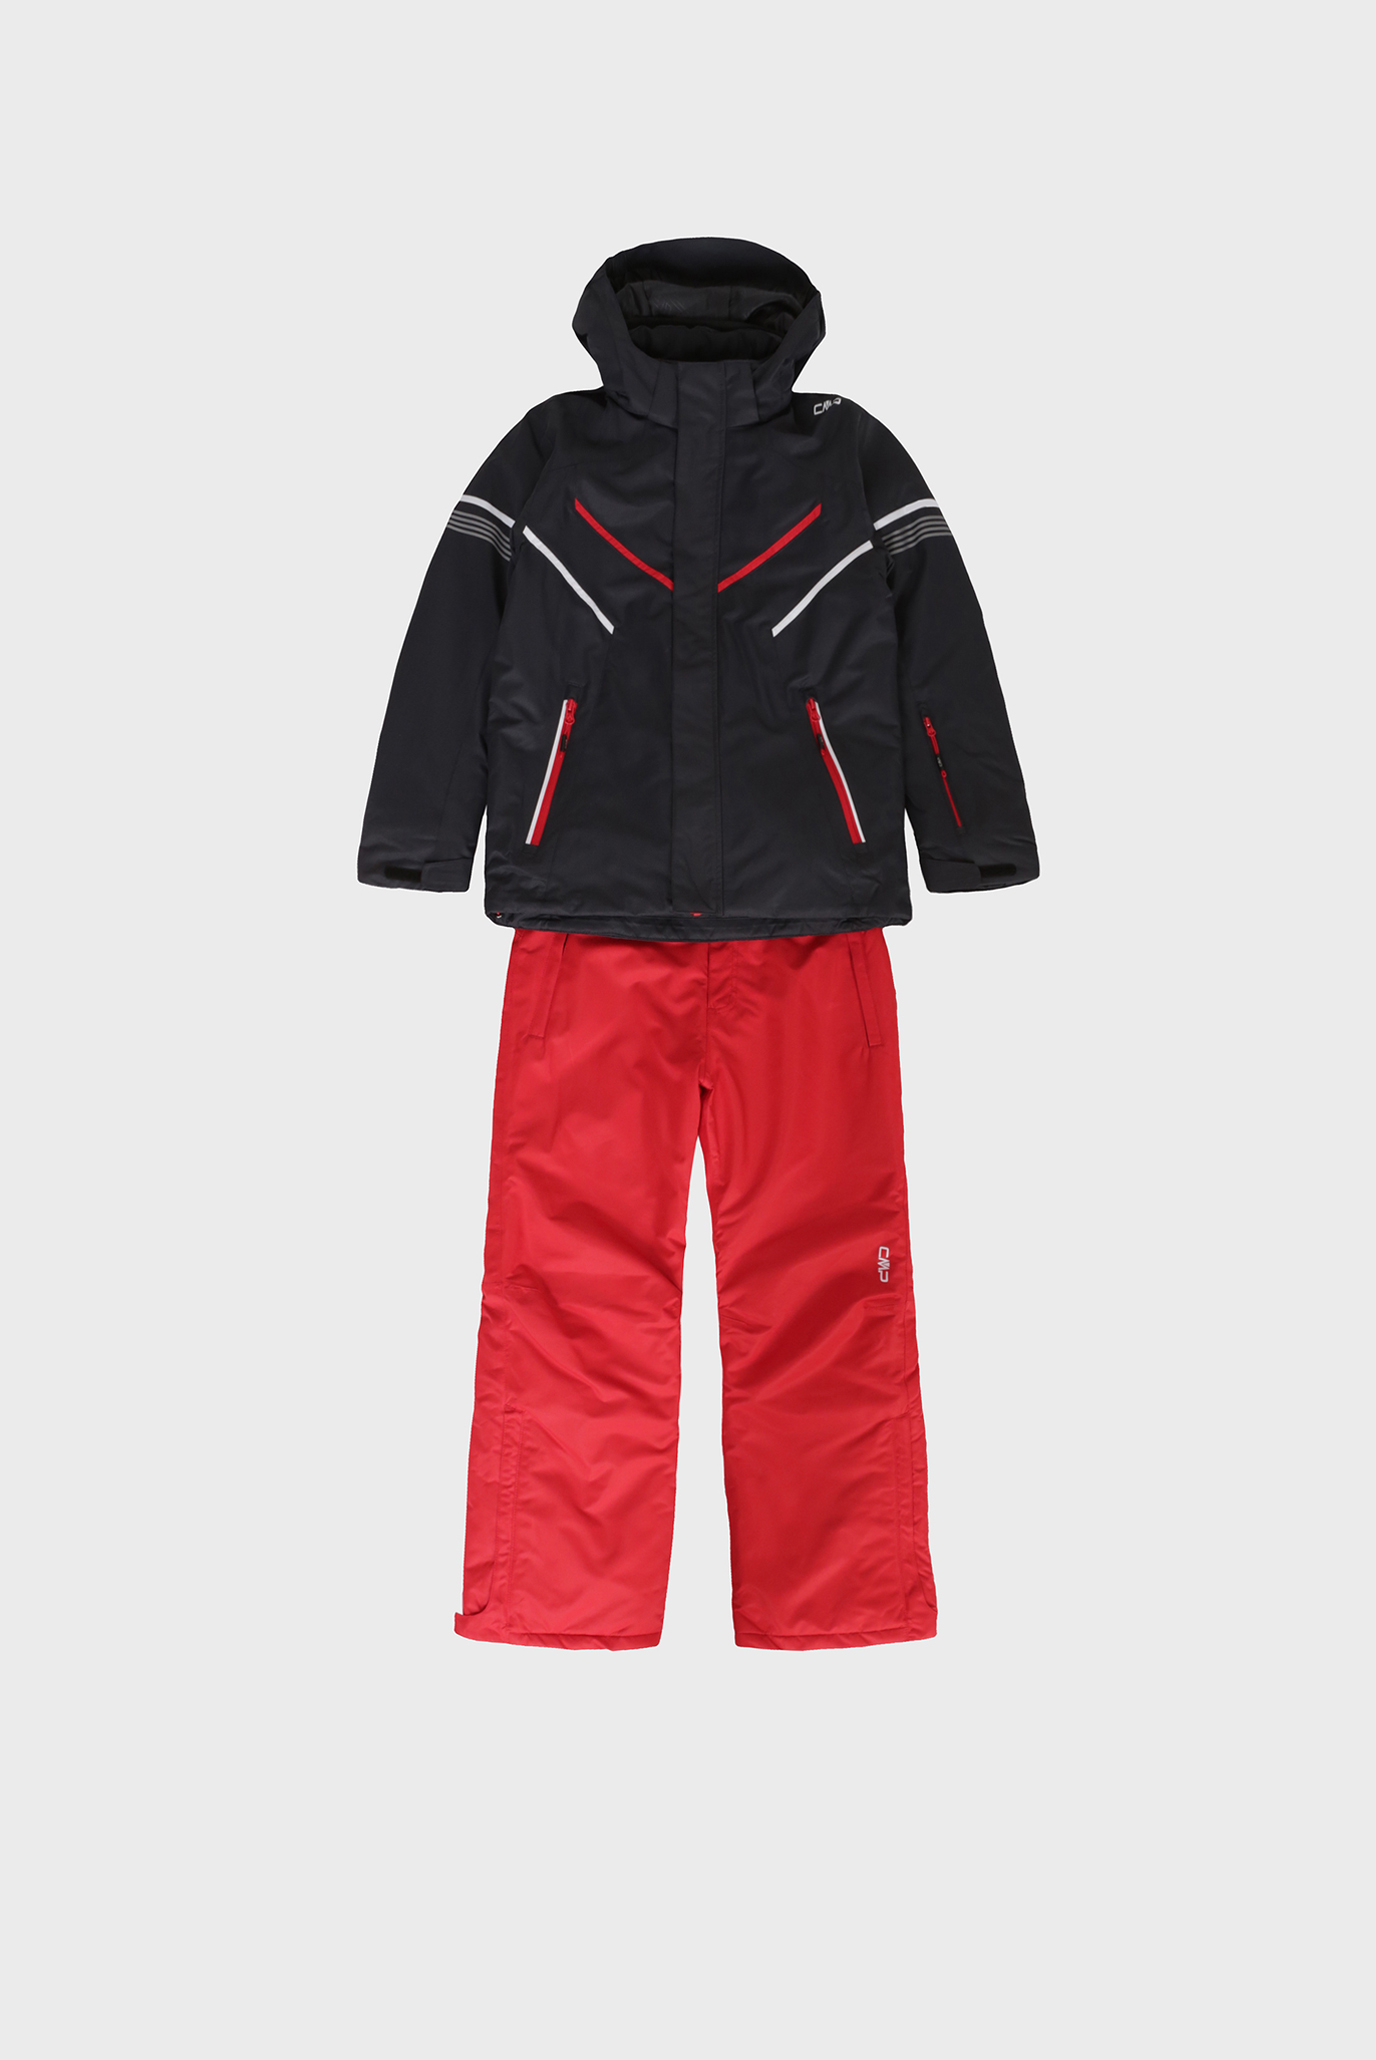 Дитячий червоний лижний костюм (куртка, штани) 1